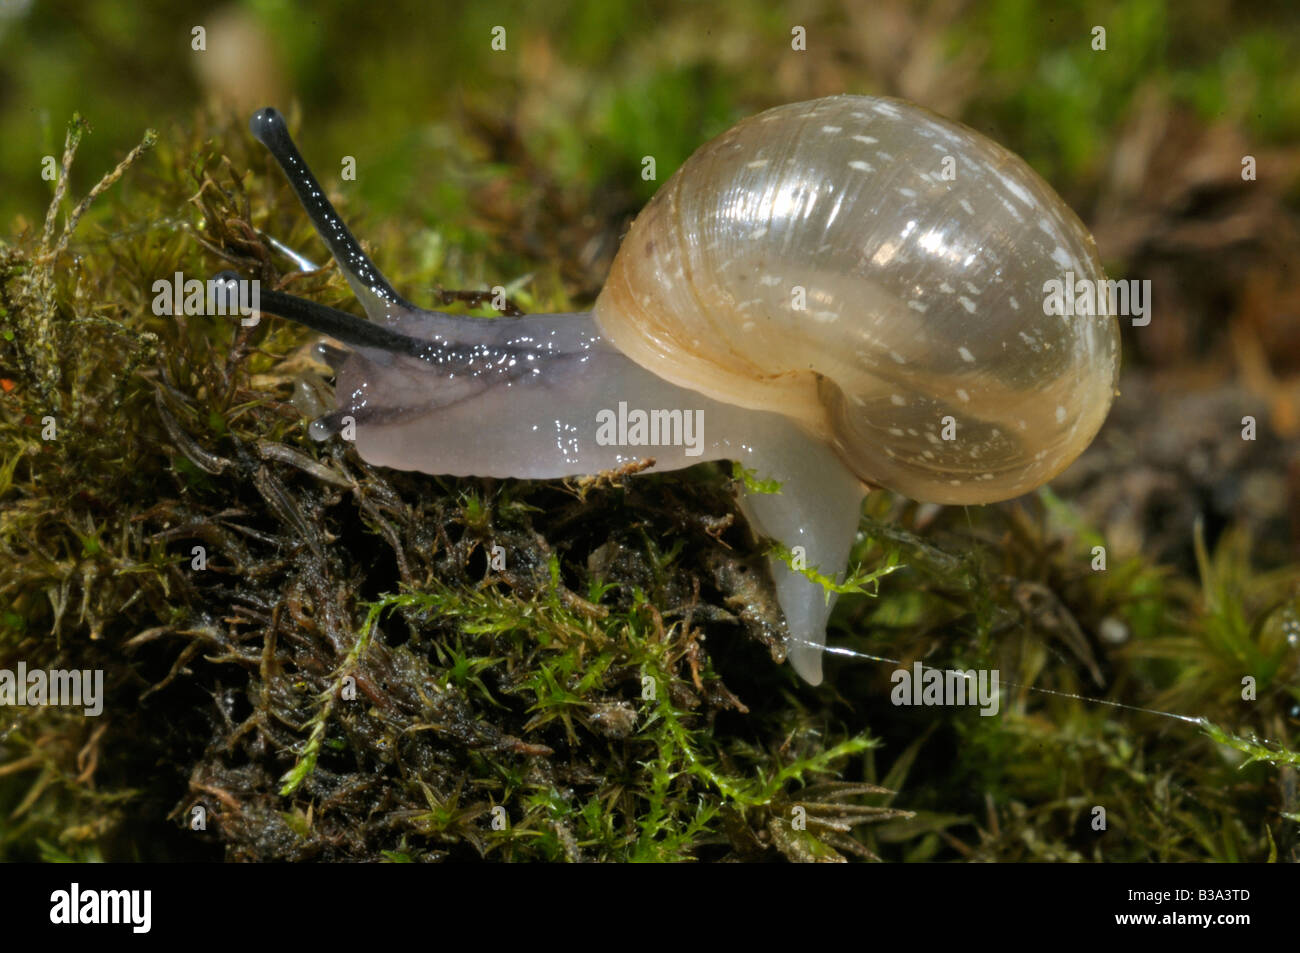 Escargot romain, les escargots escargot, escargots (Helix pomatia), 14 jours snail Banque D'Images